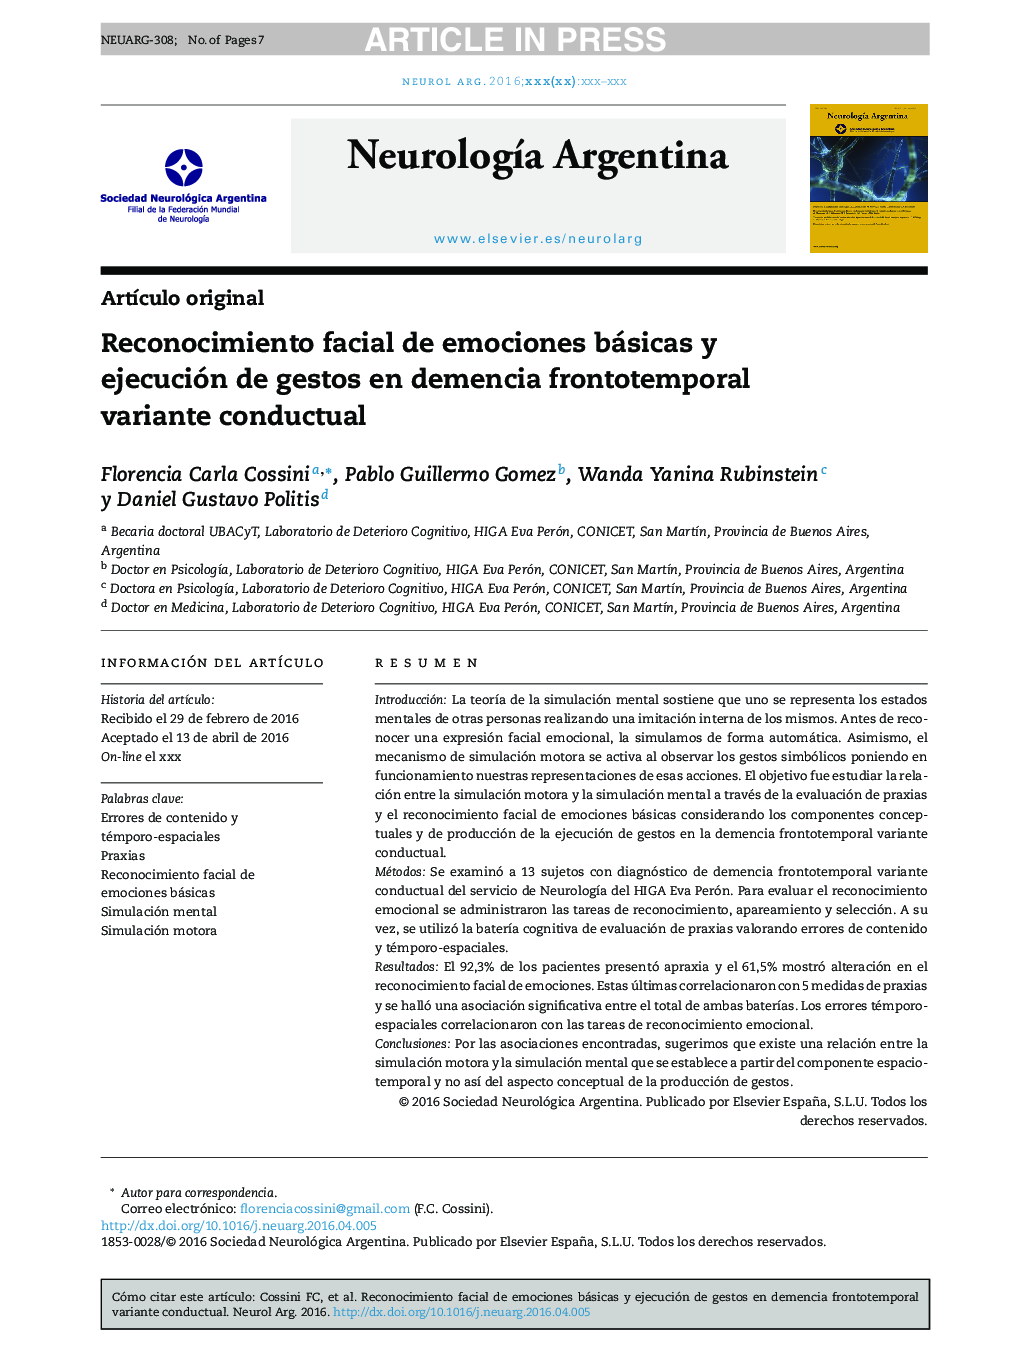 Reconocimiento facial de emociones básicas y ejecución de gestos en demencia frontotemporal variante conductual